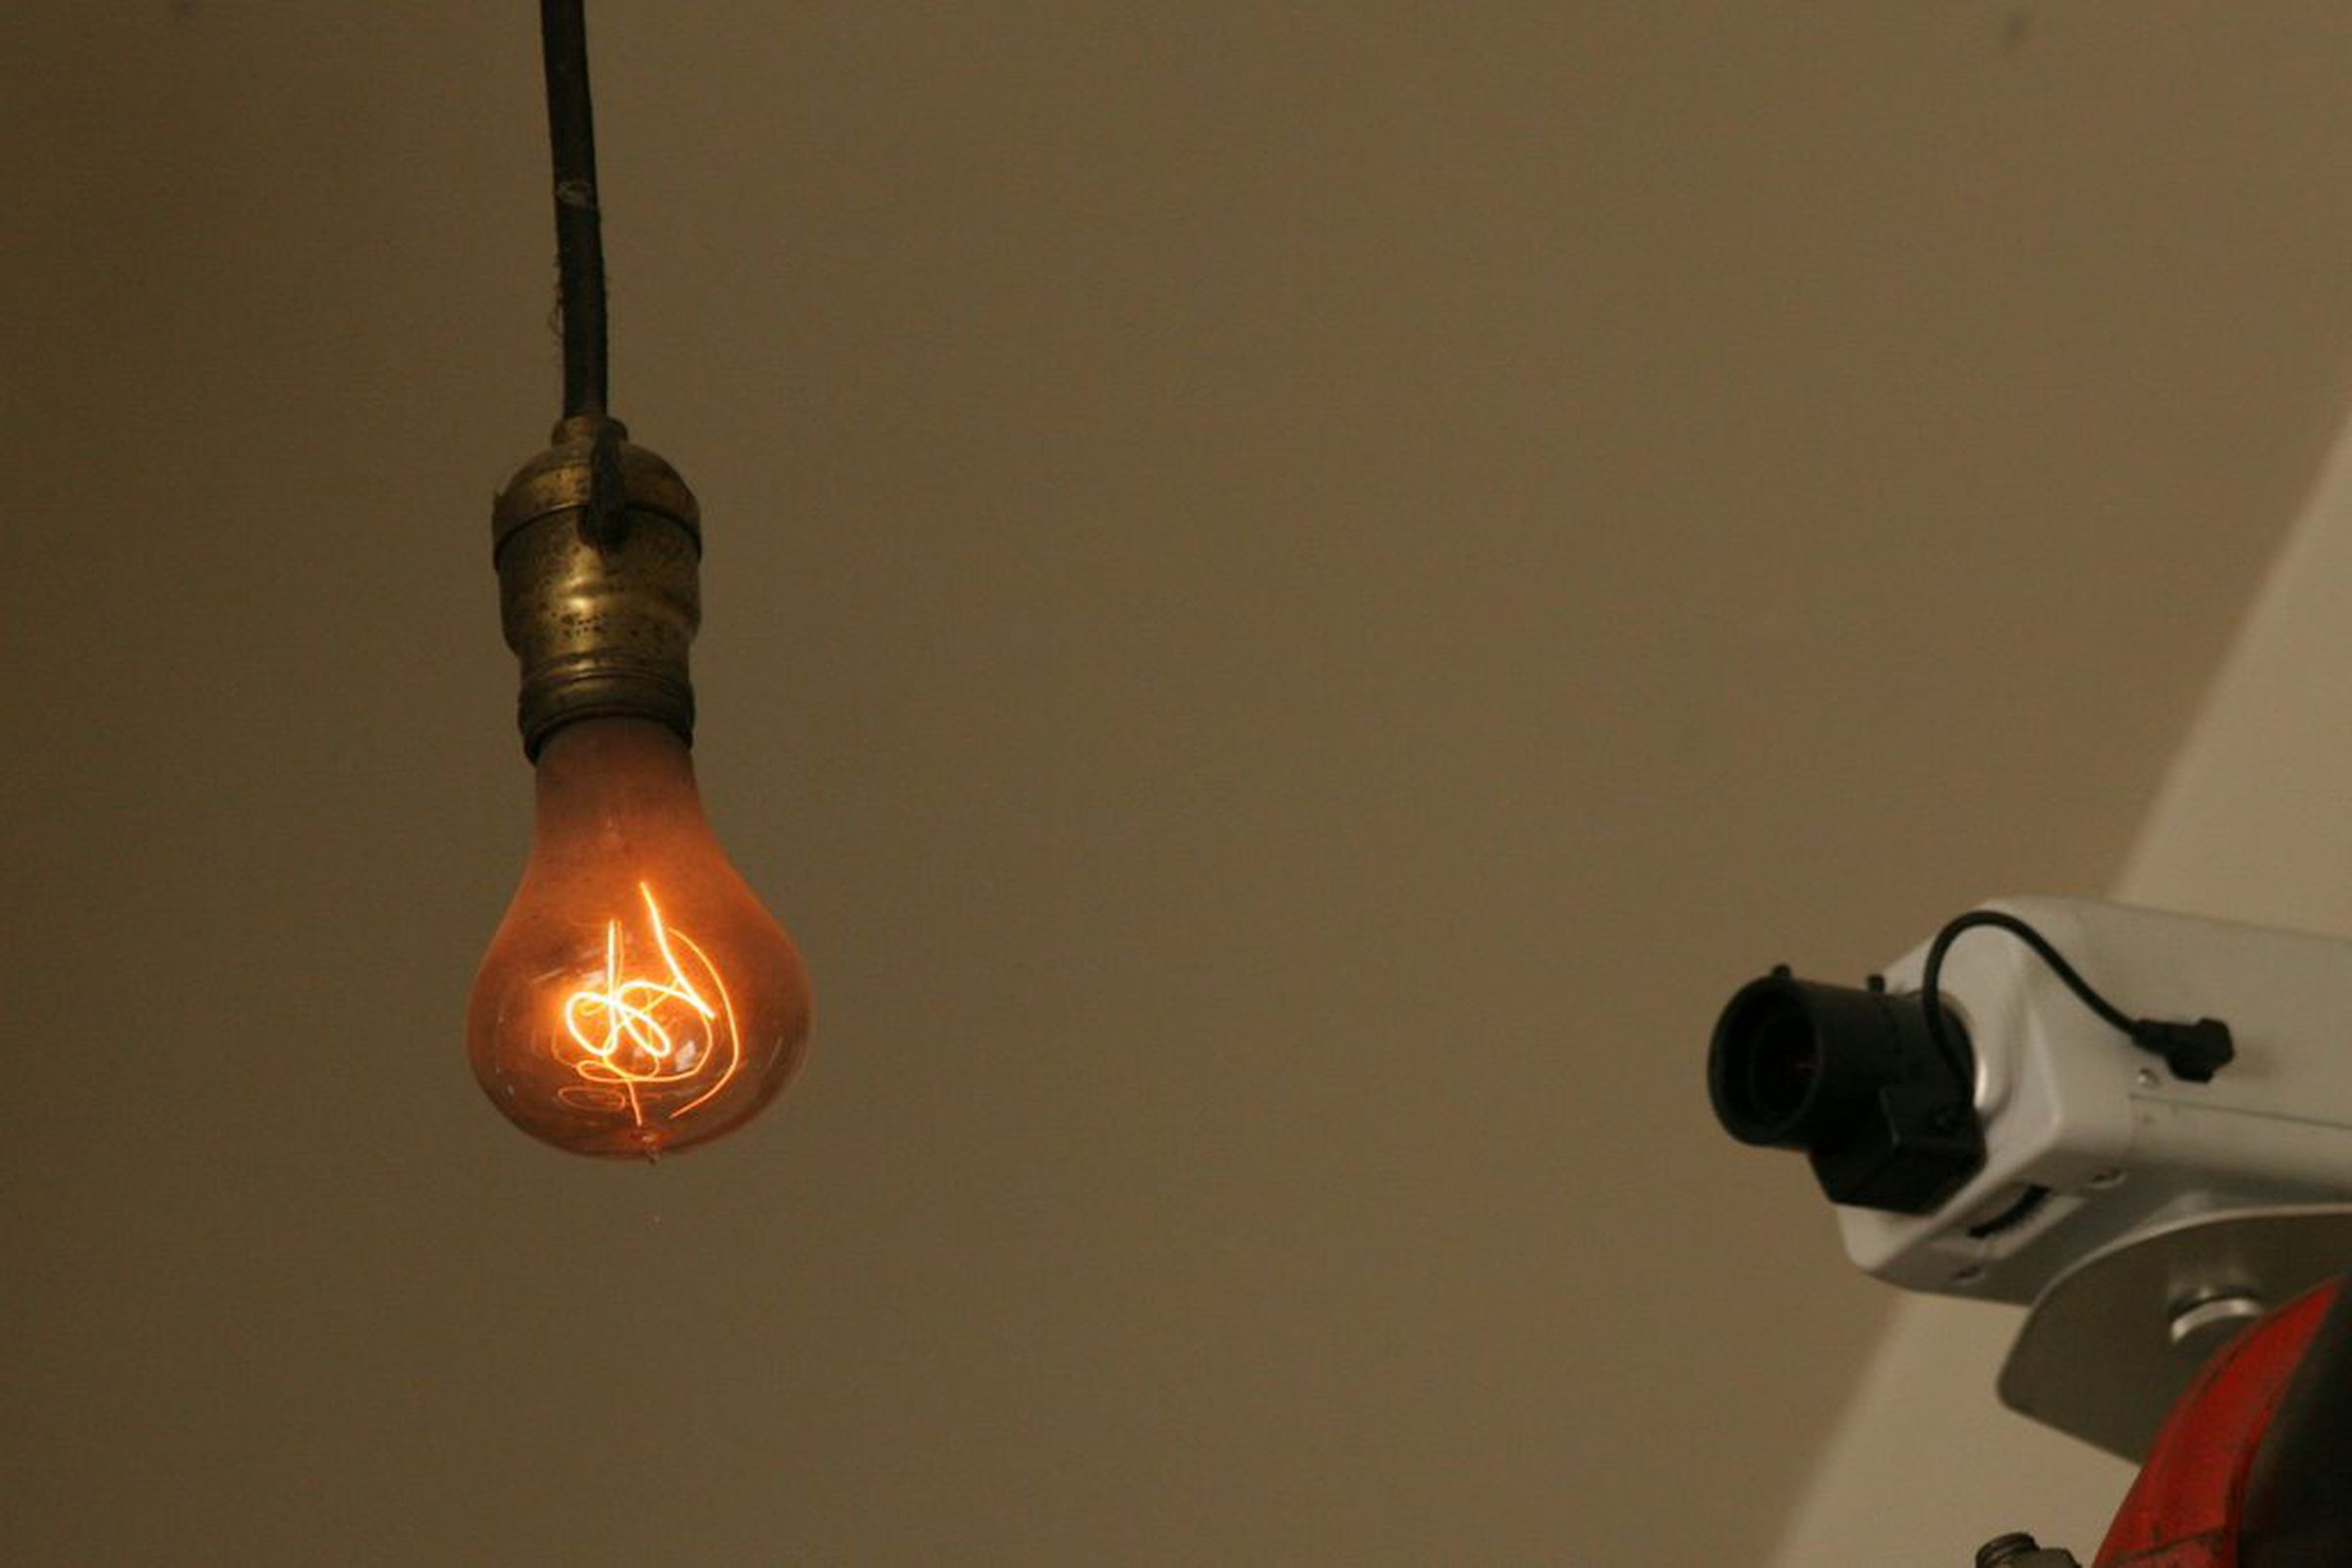 Гудят лампочки. Столетняя лампа в Ливермор. Ливермор лампочка которая горит 110 лет. Лампочка в пожарной части города Ливермор. Лампа накаливания \\Ливермор.